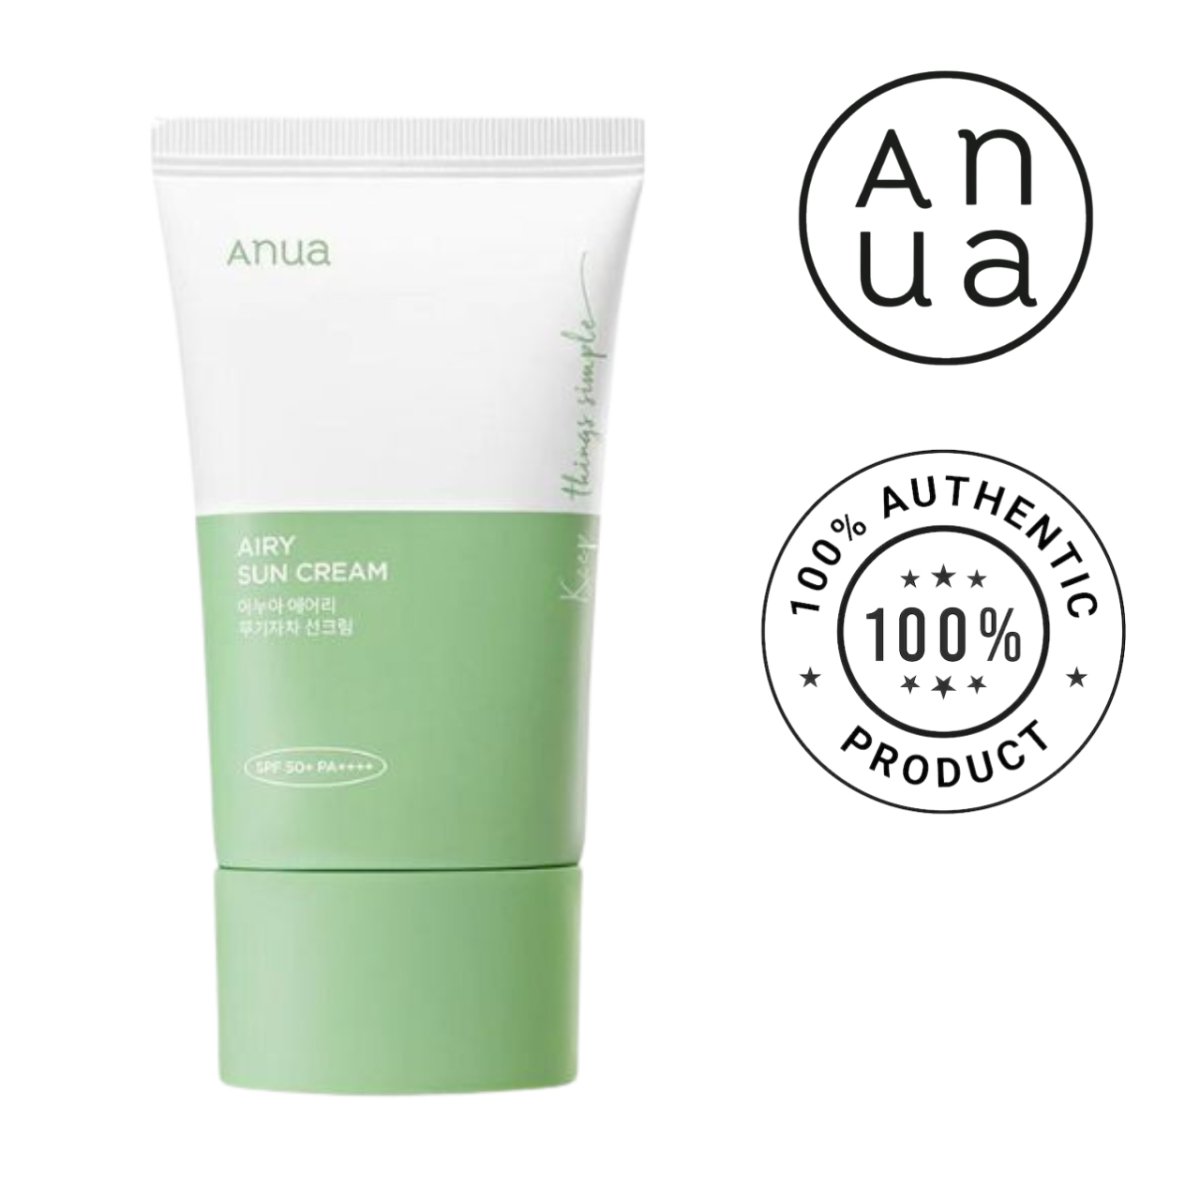 ANUA Airy Sun Cream SPF 50+ PA++++